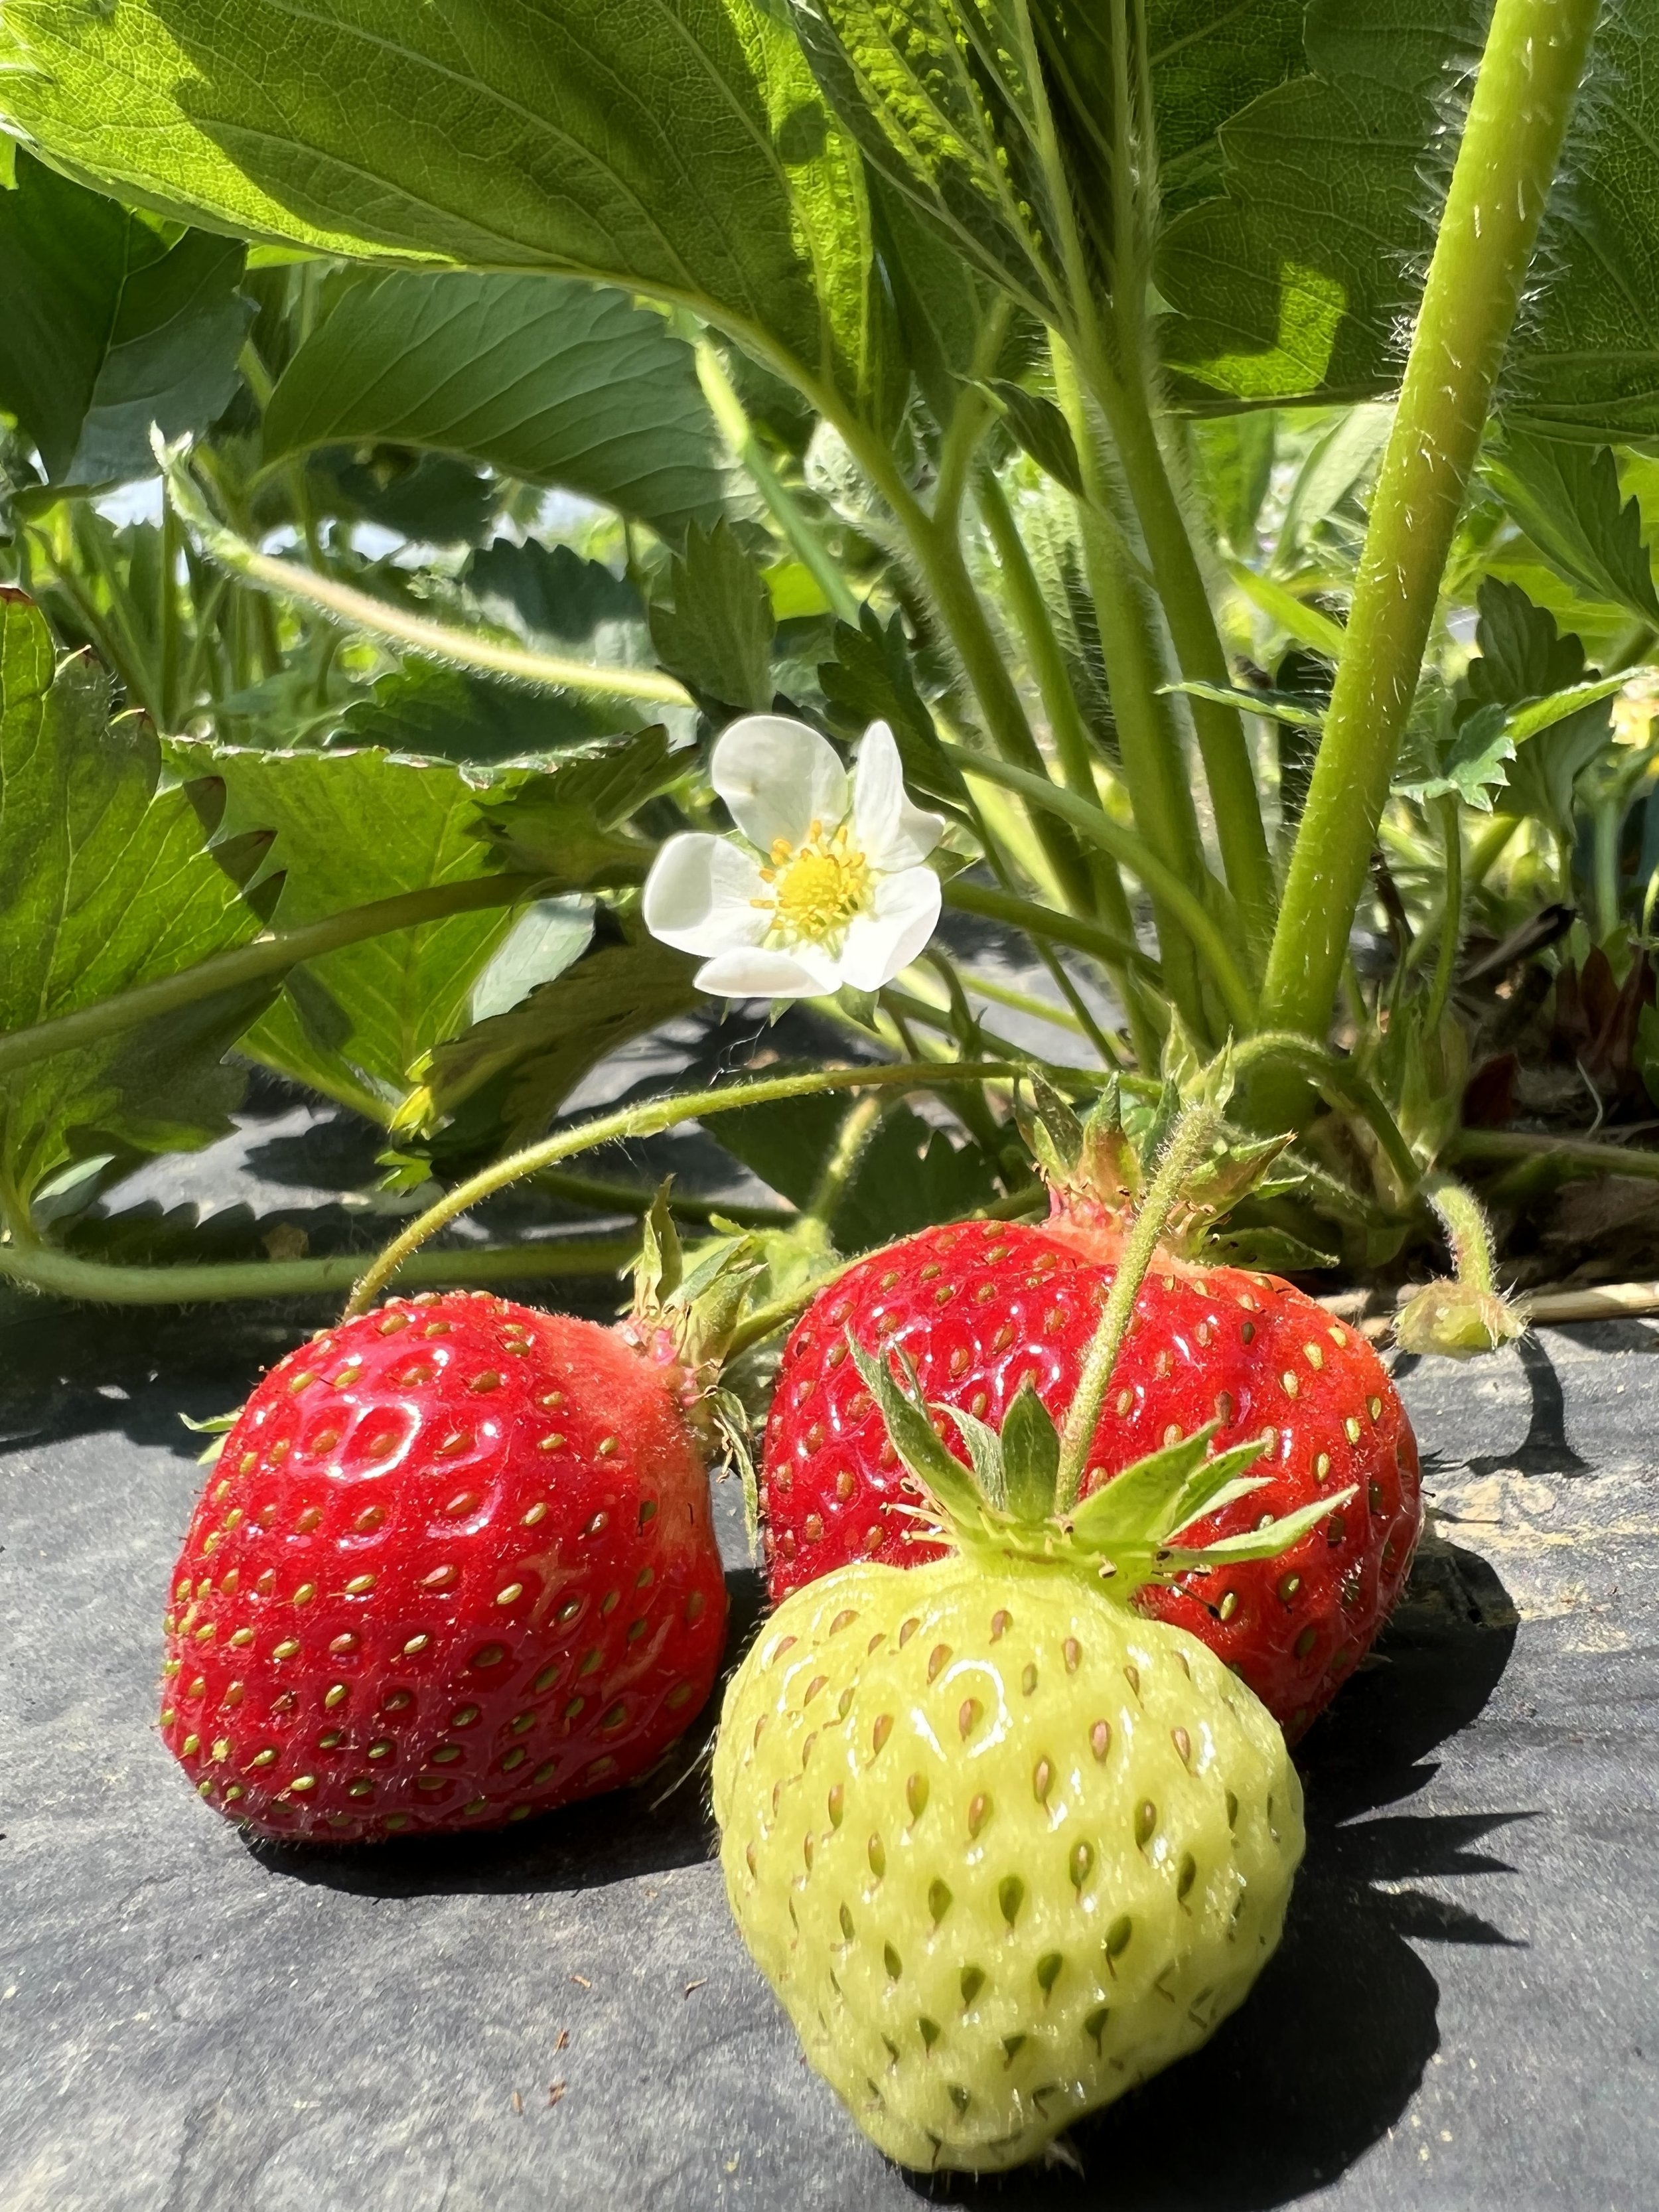 Strawberries 3.jpg